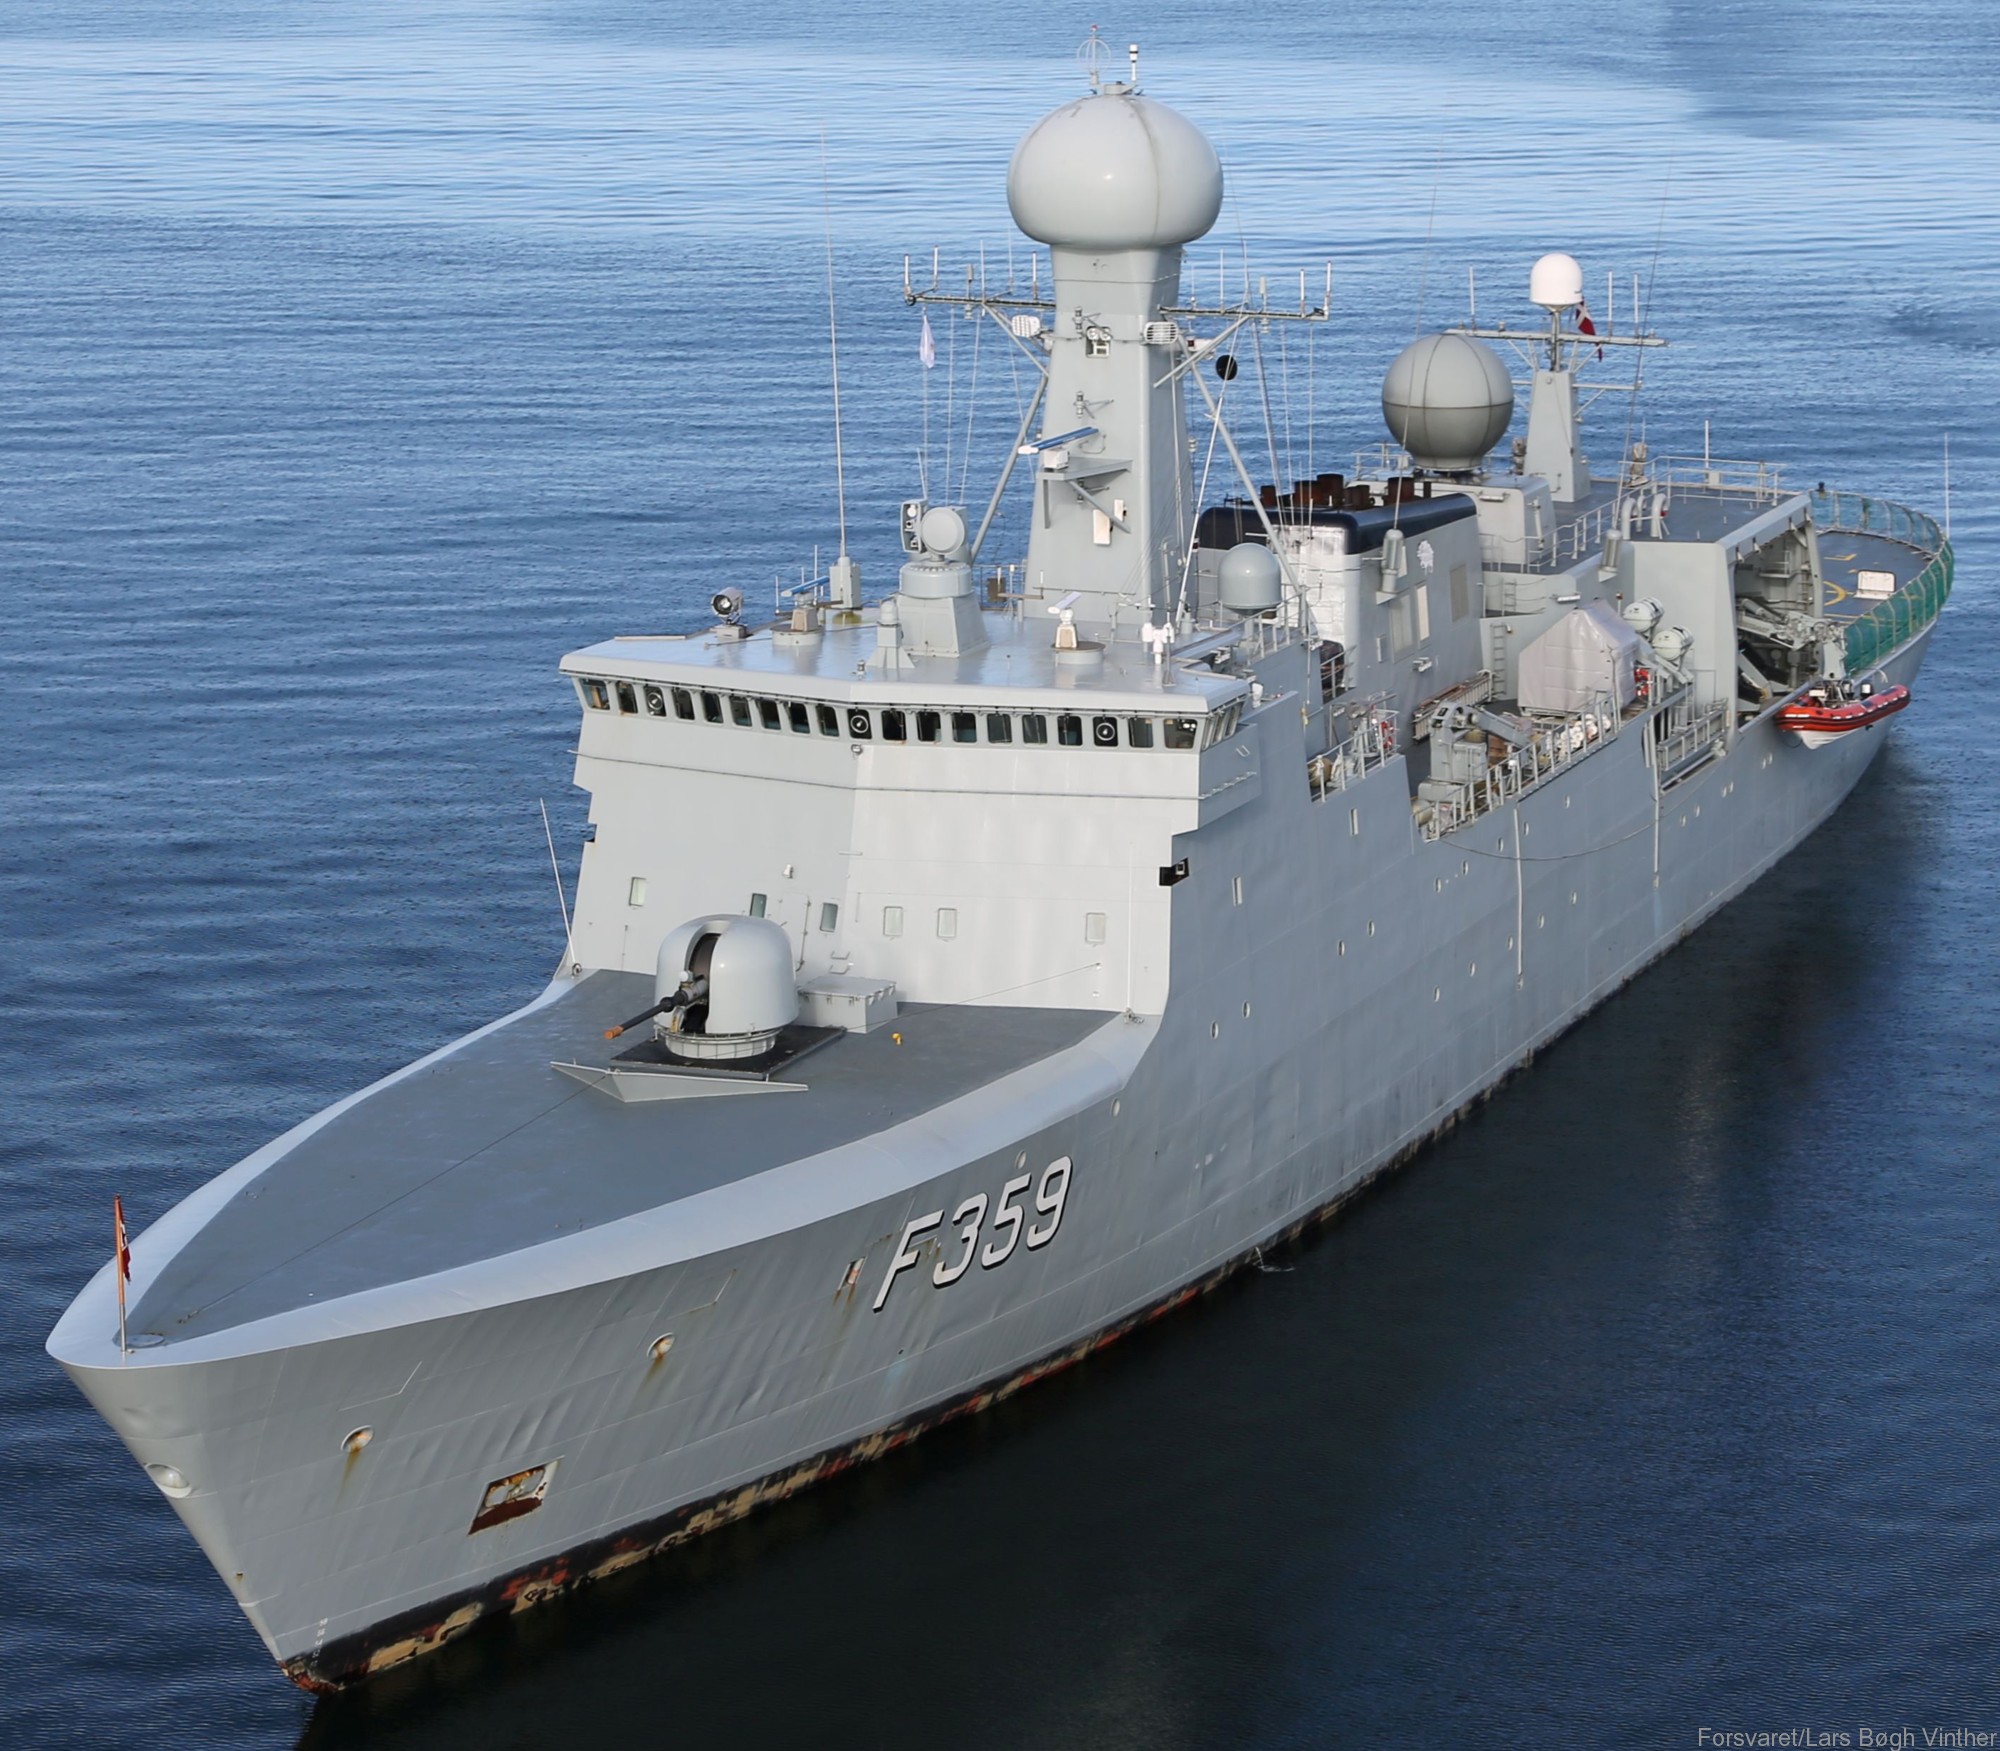 f-359 hdms vaedderen thetis class ocean patrol frigate royal danish navy kongelige danske marine kdm inspektionsskibet 05